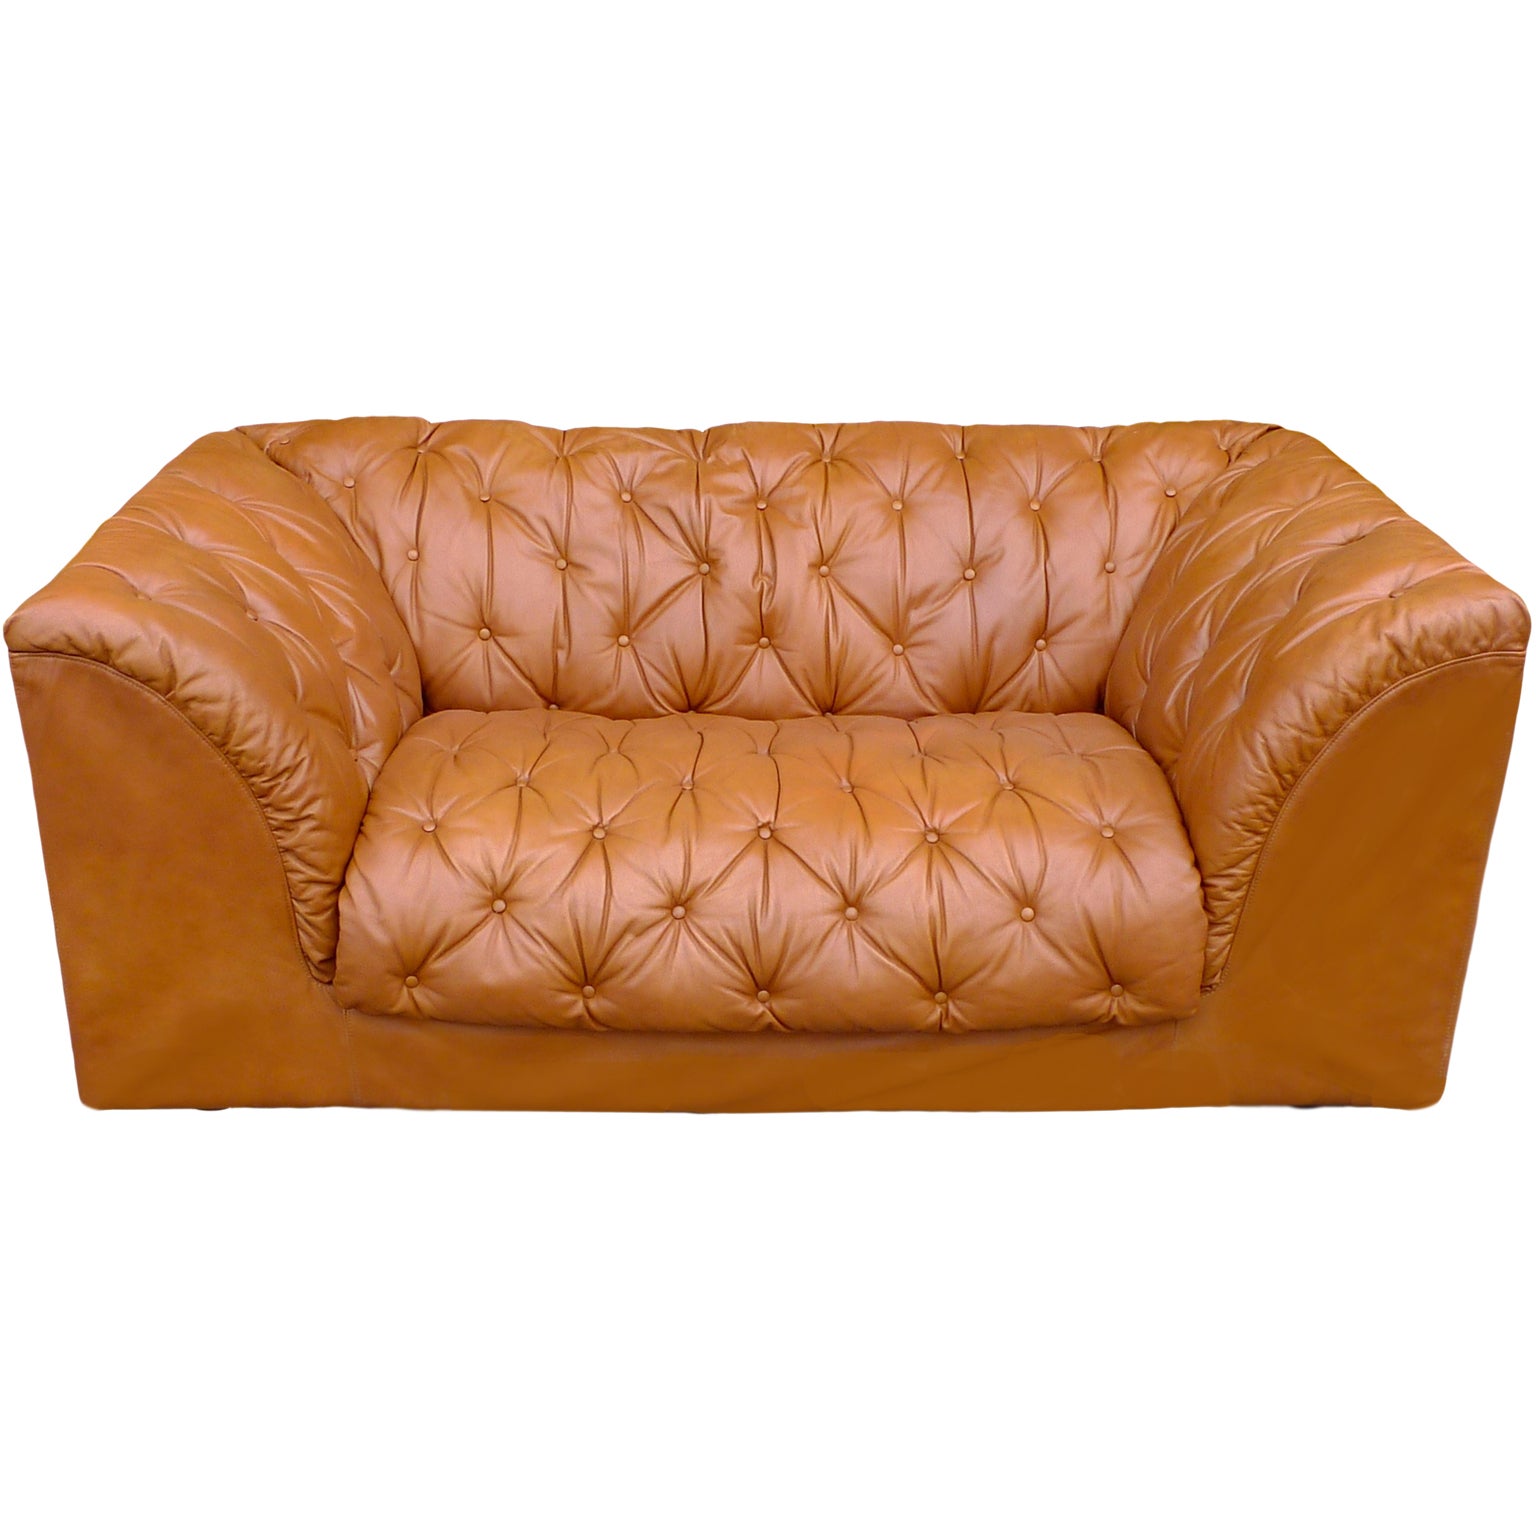 1970's Italian Tufted Leather Sofa by Ambienti Bernini